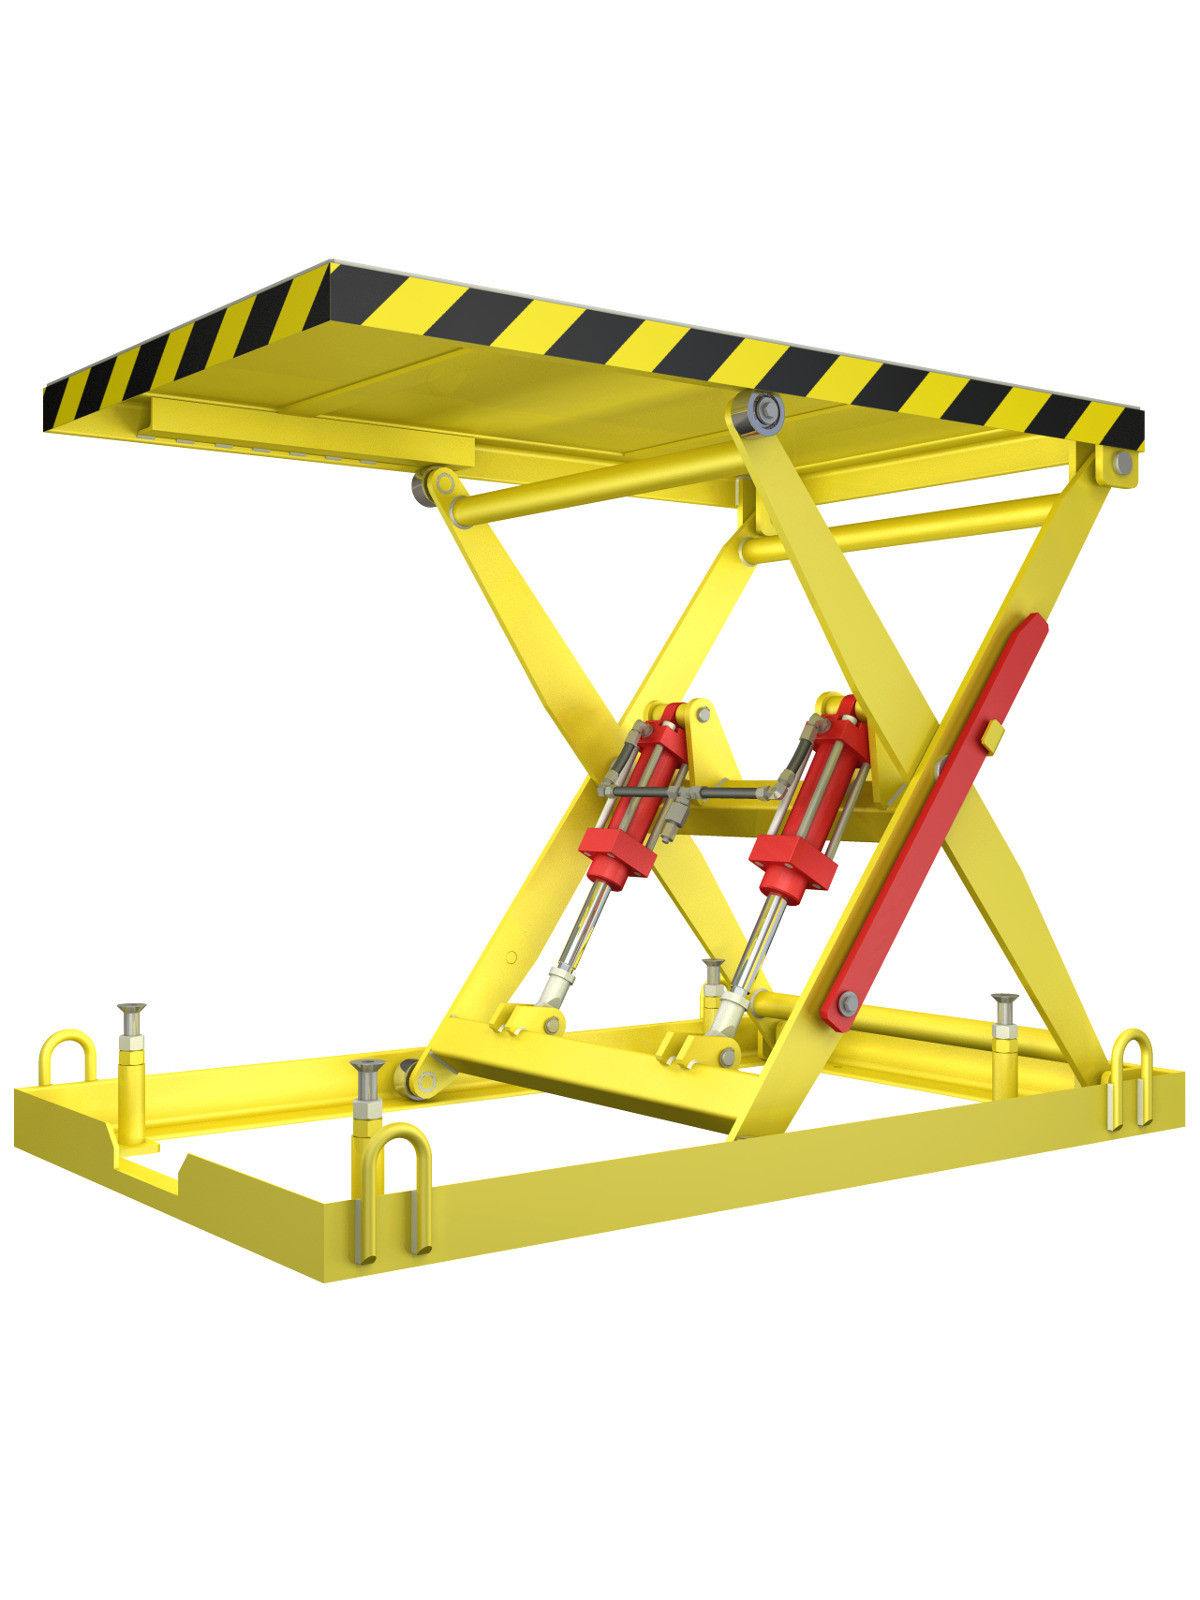 Best ideas about DIY Scissor Lift Table
. Save or Pin Diy scissor lift table Download 3D and 2D CAD plete Now.